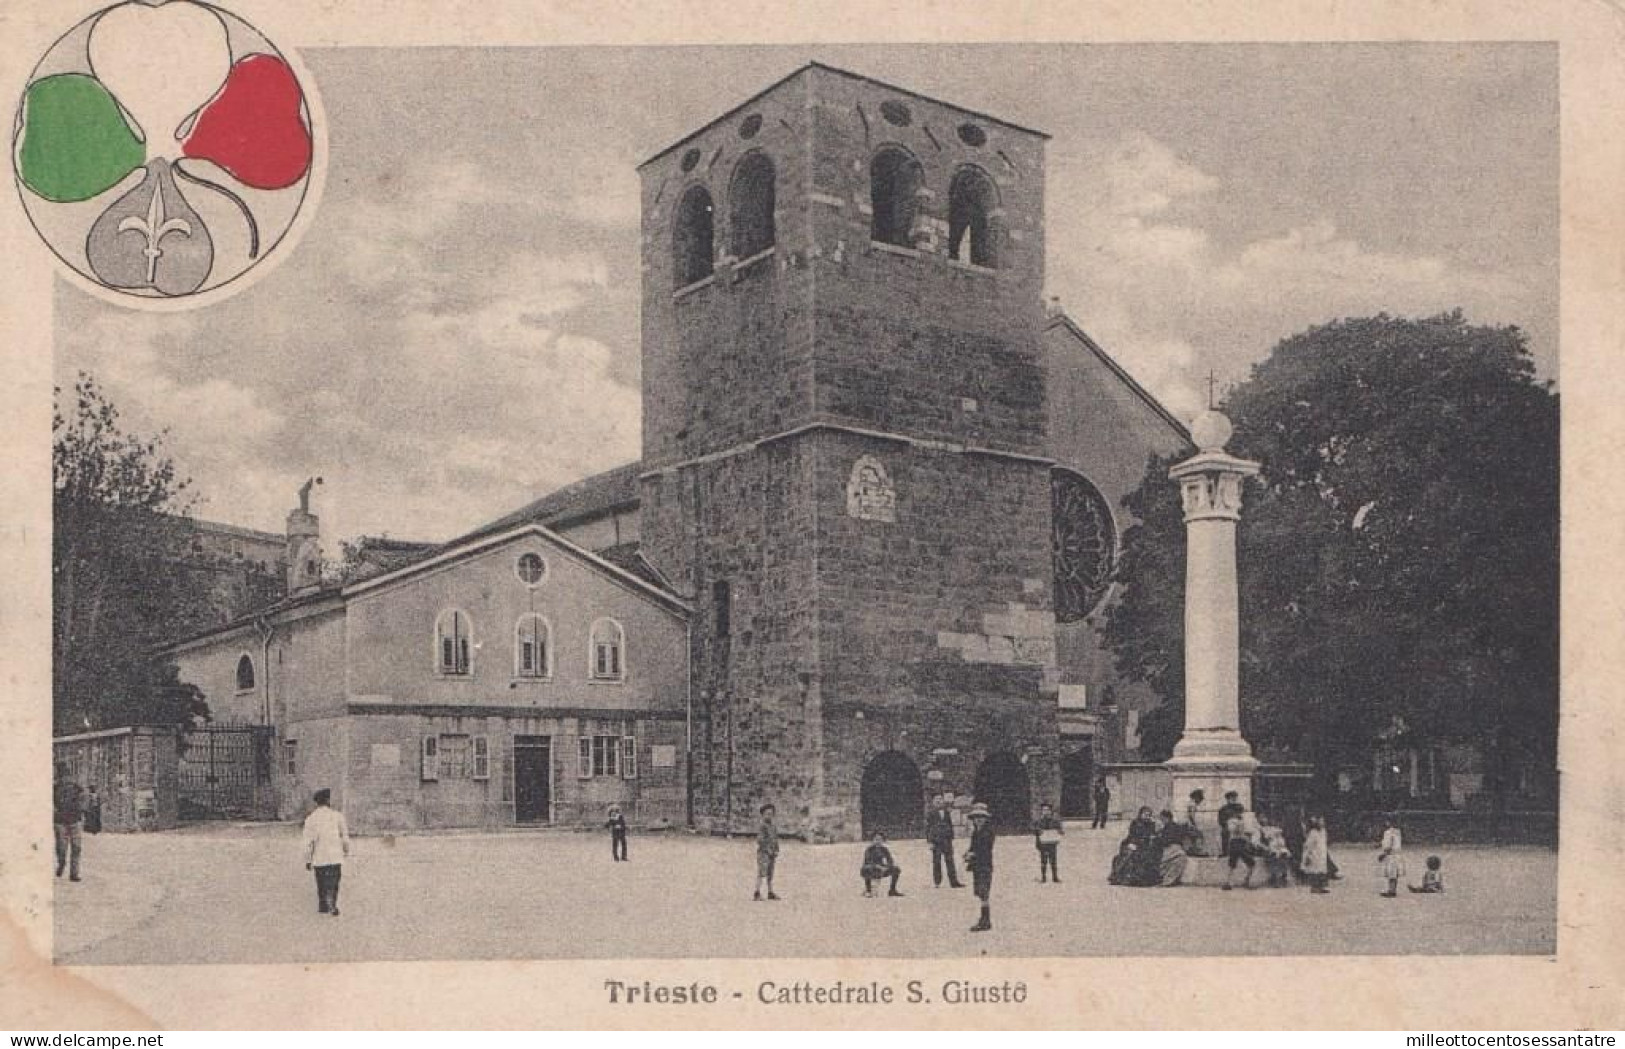 374 - TRIESTE  - Cartolina Illustrata " Trieste - Cattedrale S. Giusto  " Del 1919 Da Trieste A Bologna Con Cent 10 - - Marcofilie